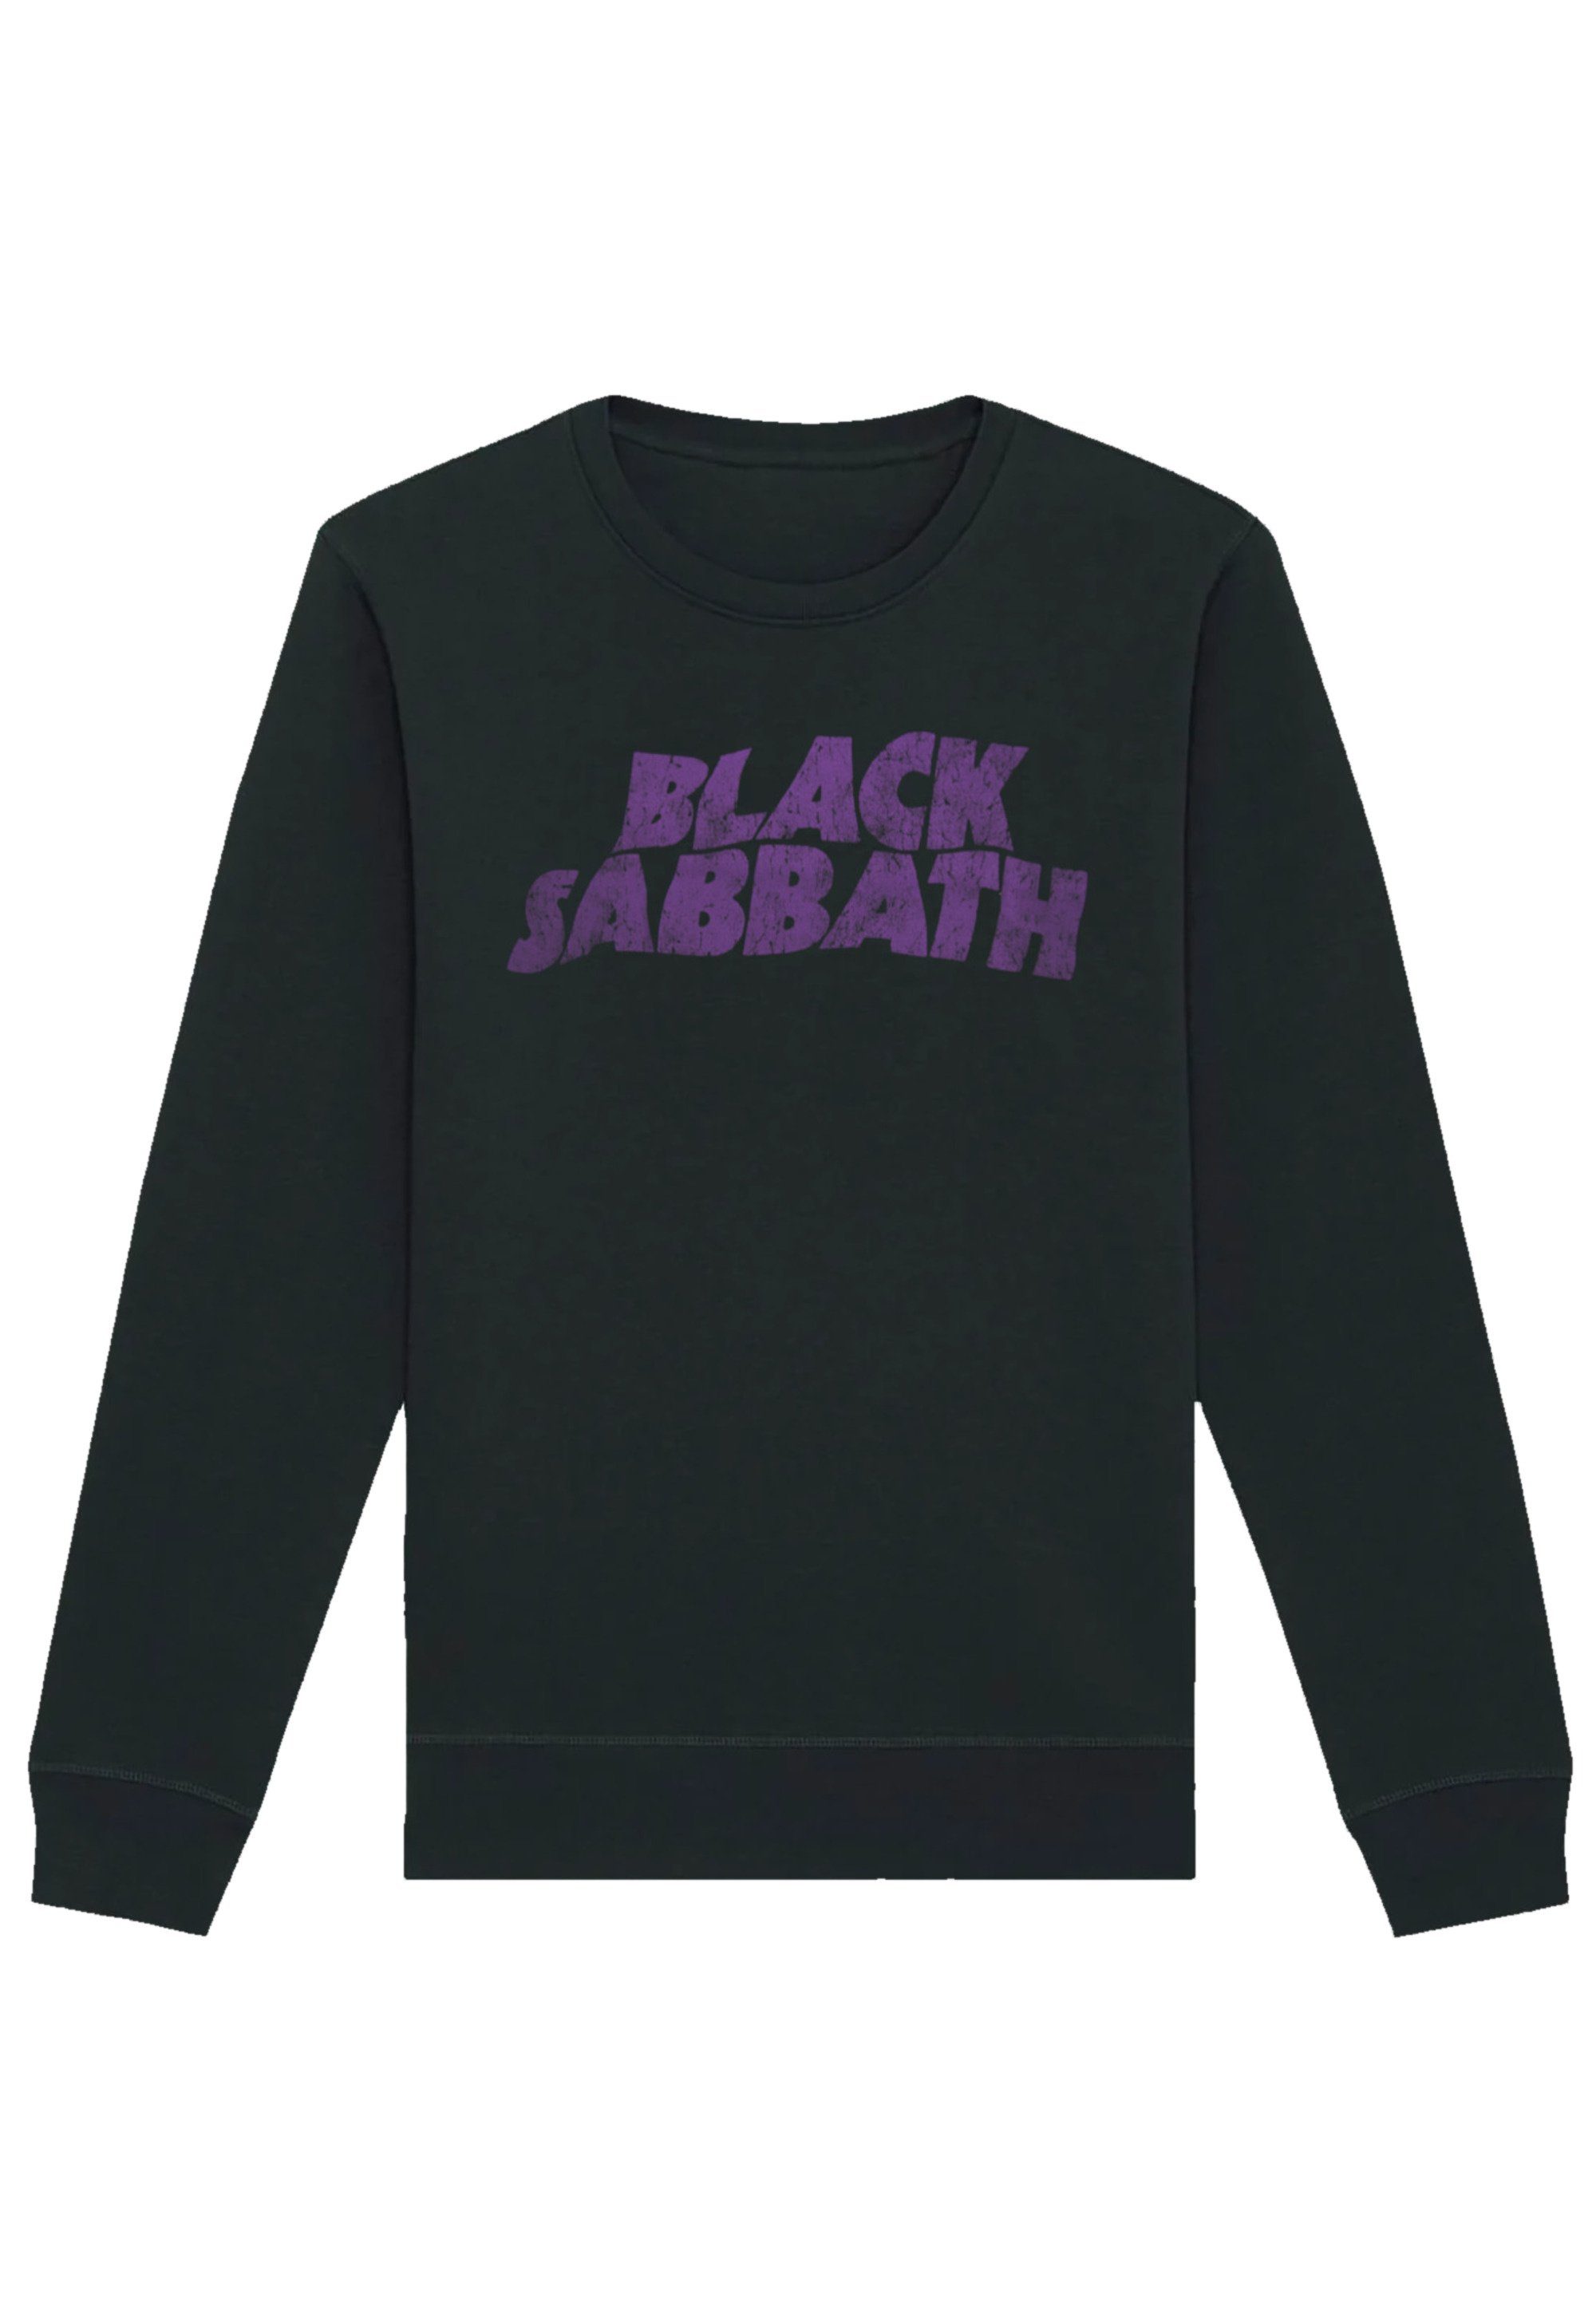 Black Sabbath Logo Sweatshirt Wavy Black Print F4NT4STIC Distressed